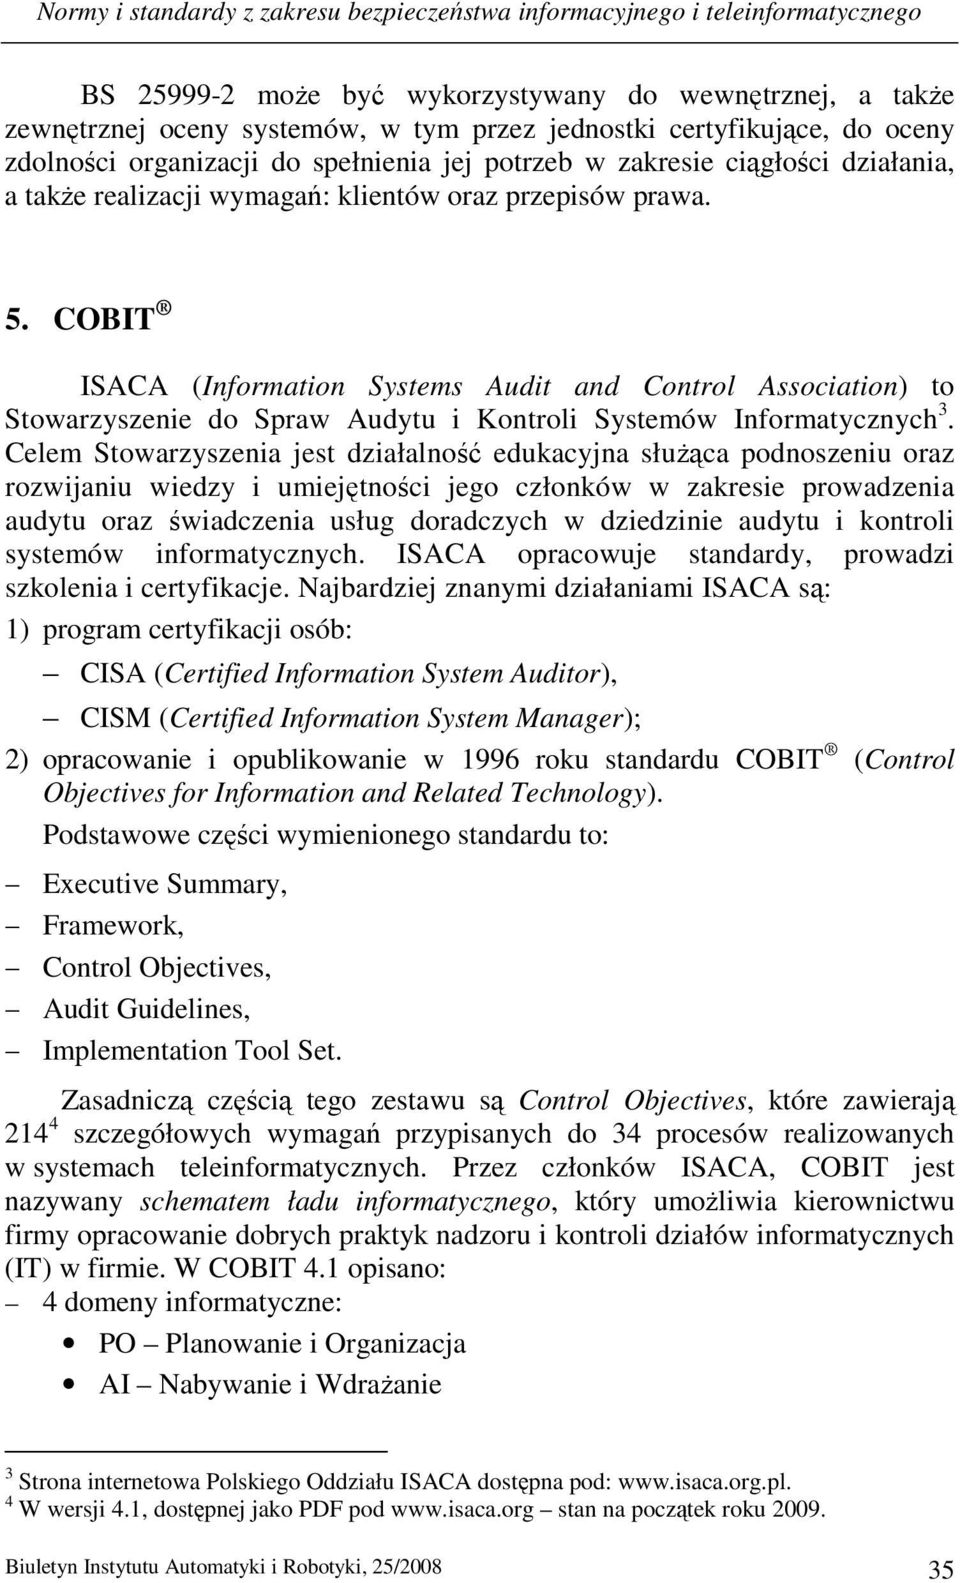 COBIT ISACA (Information Systems Audit and Control Association) to Stowarzyszenie do Spraw Audytu i Kontroli Systemów Informatycznych 3.